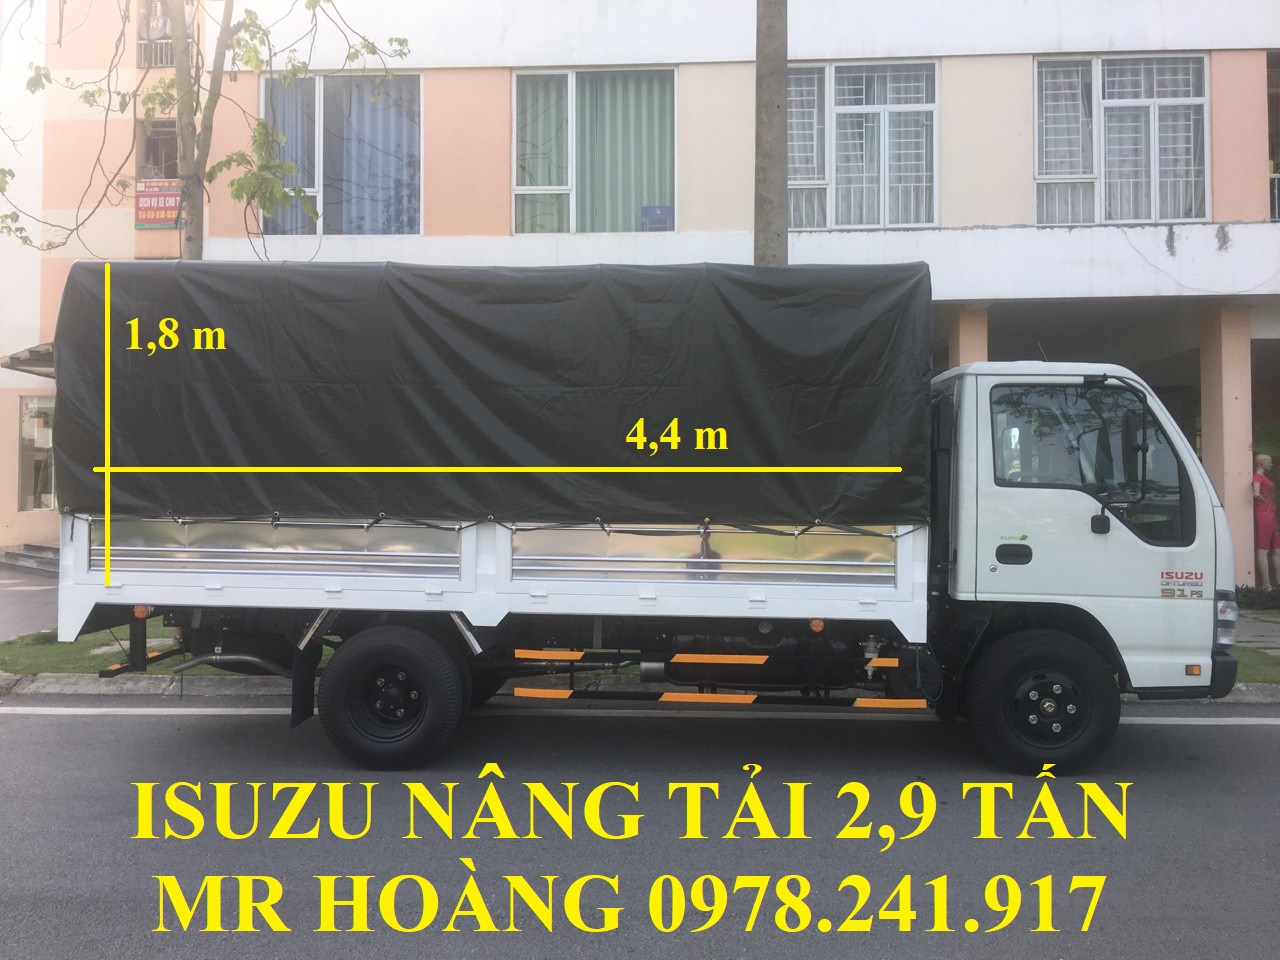 Giá bán xe tải isuzu 2,9 tấn nâng tải QKR55H-16 trả góp 100 triệu